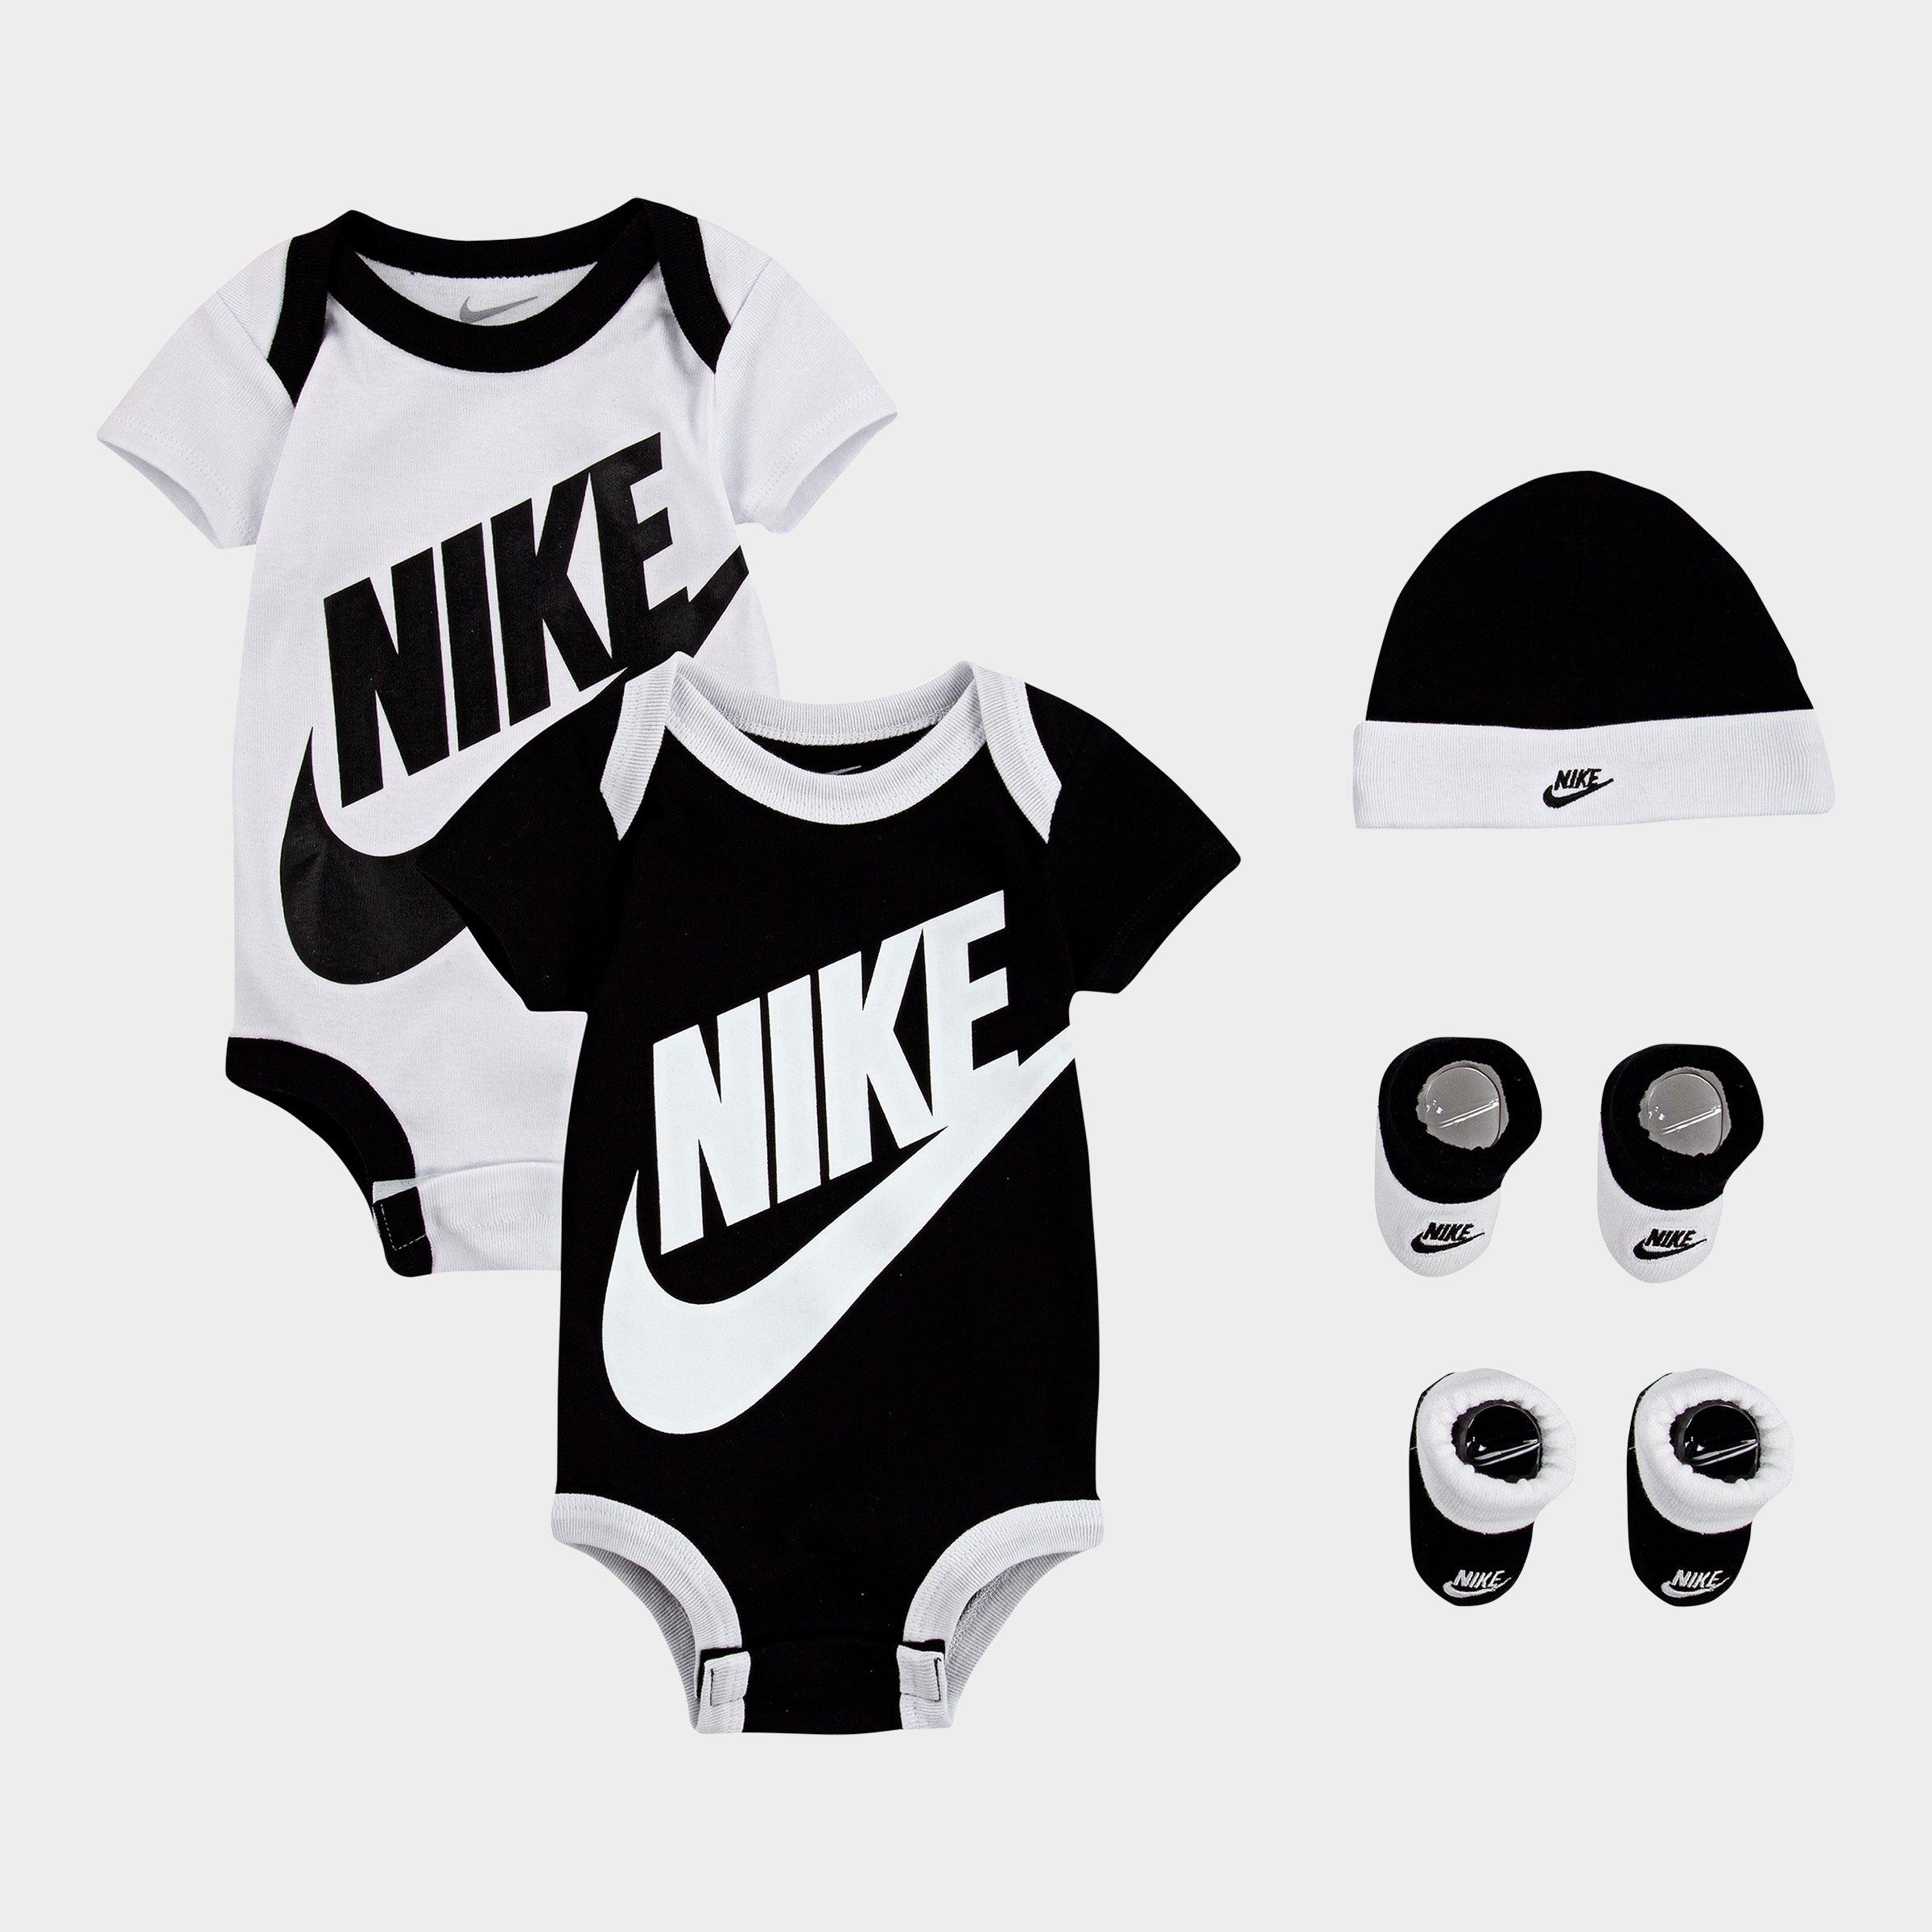 nike baby clothing